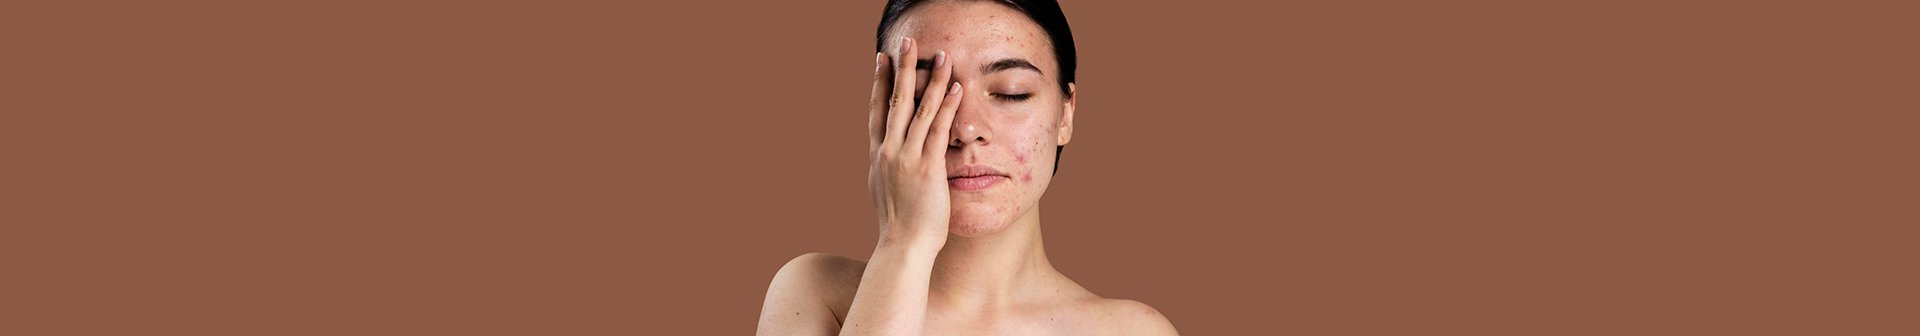 Eine Frau mit unreiner Haut fasst sich in ihr Gesicht